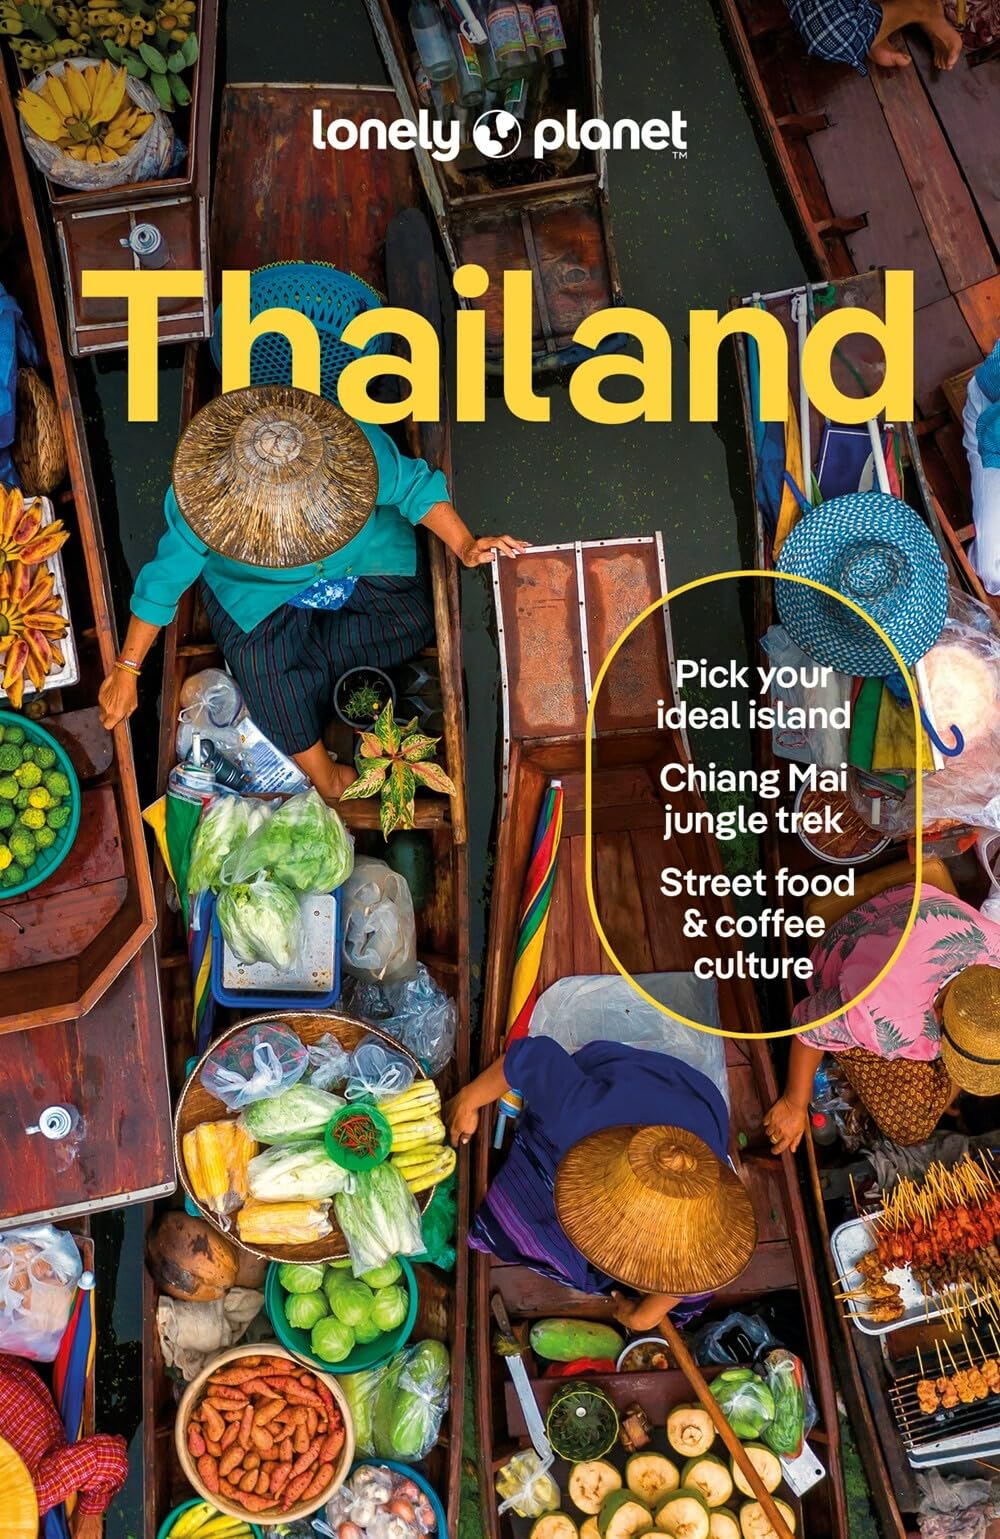 מדריך תאילנד לונלי פלנט 19